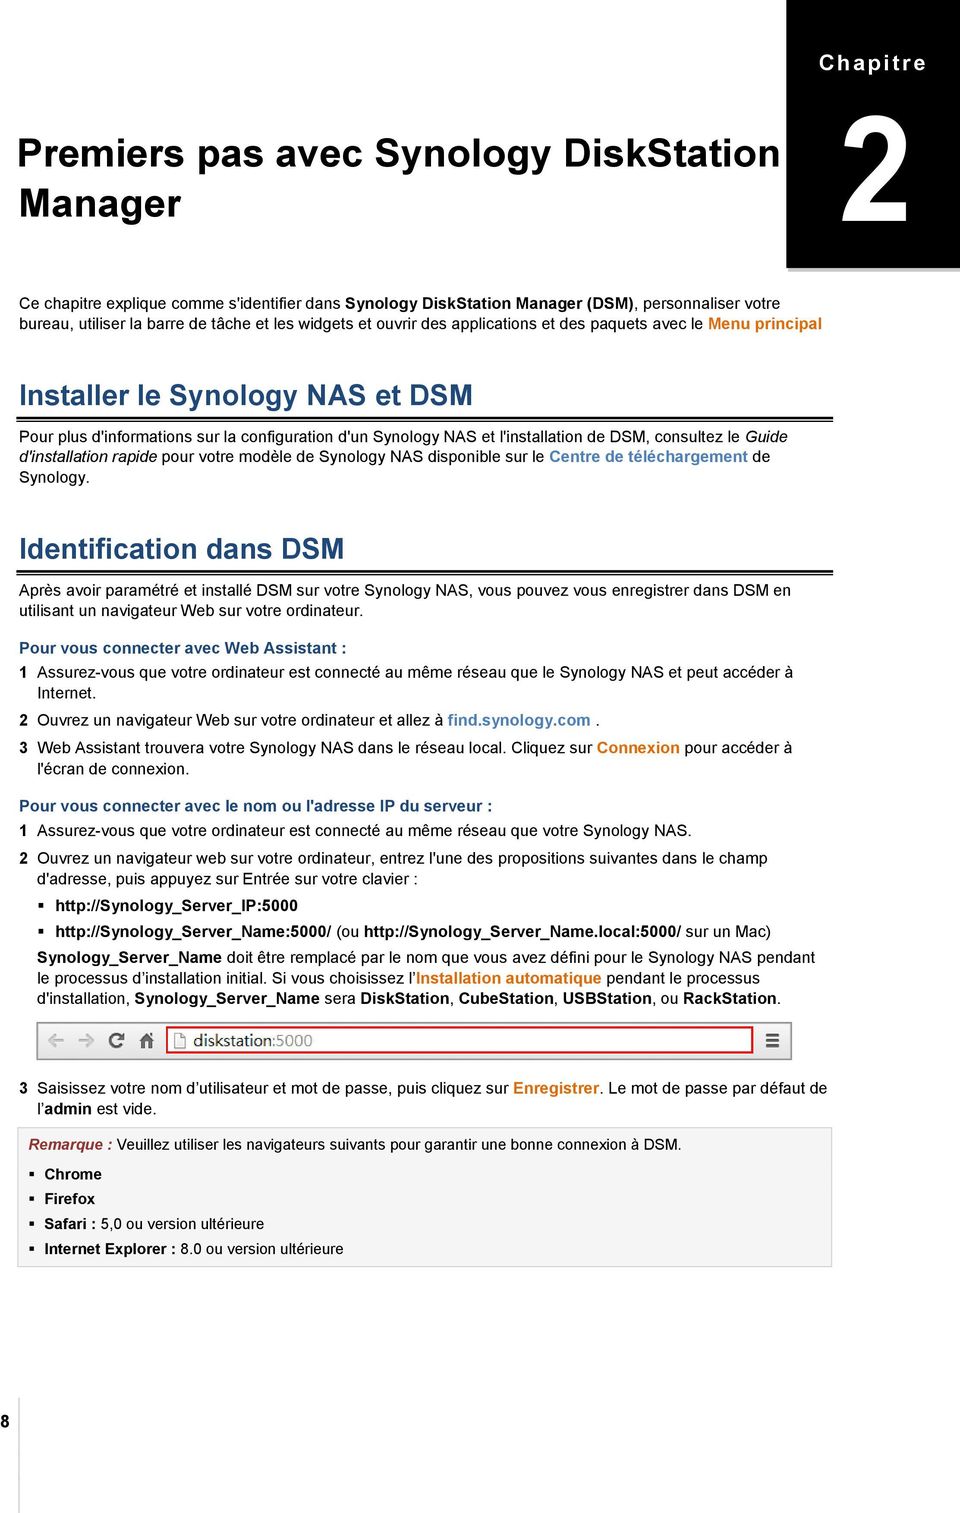 l'installation de DSM, consultez le Guide d'installation rapide pour votre modèle de Synology NAS disponible sur le Centre de téléchargement de Synology.